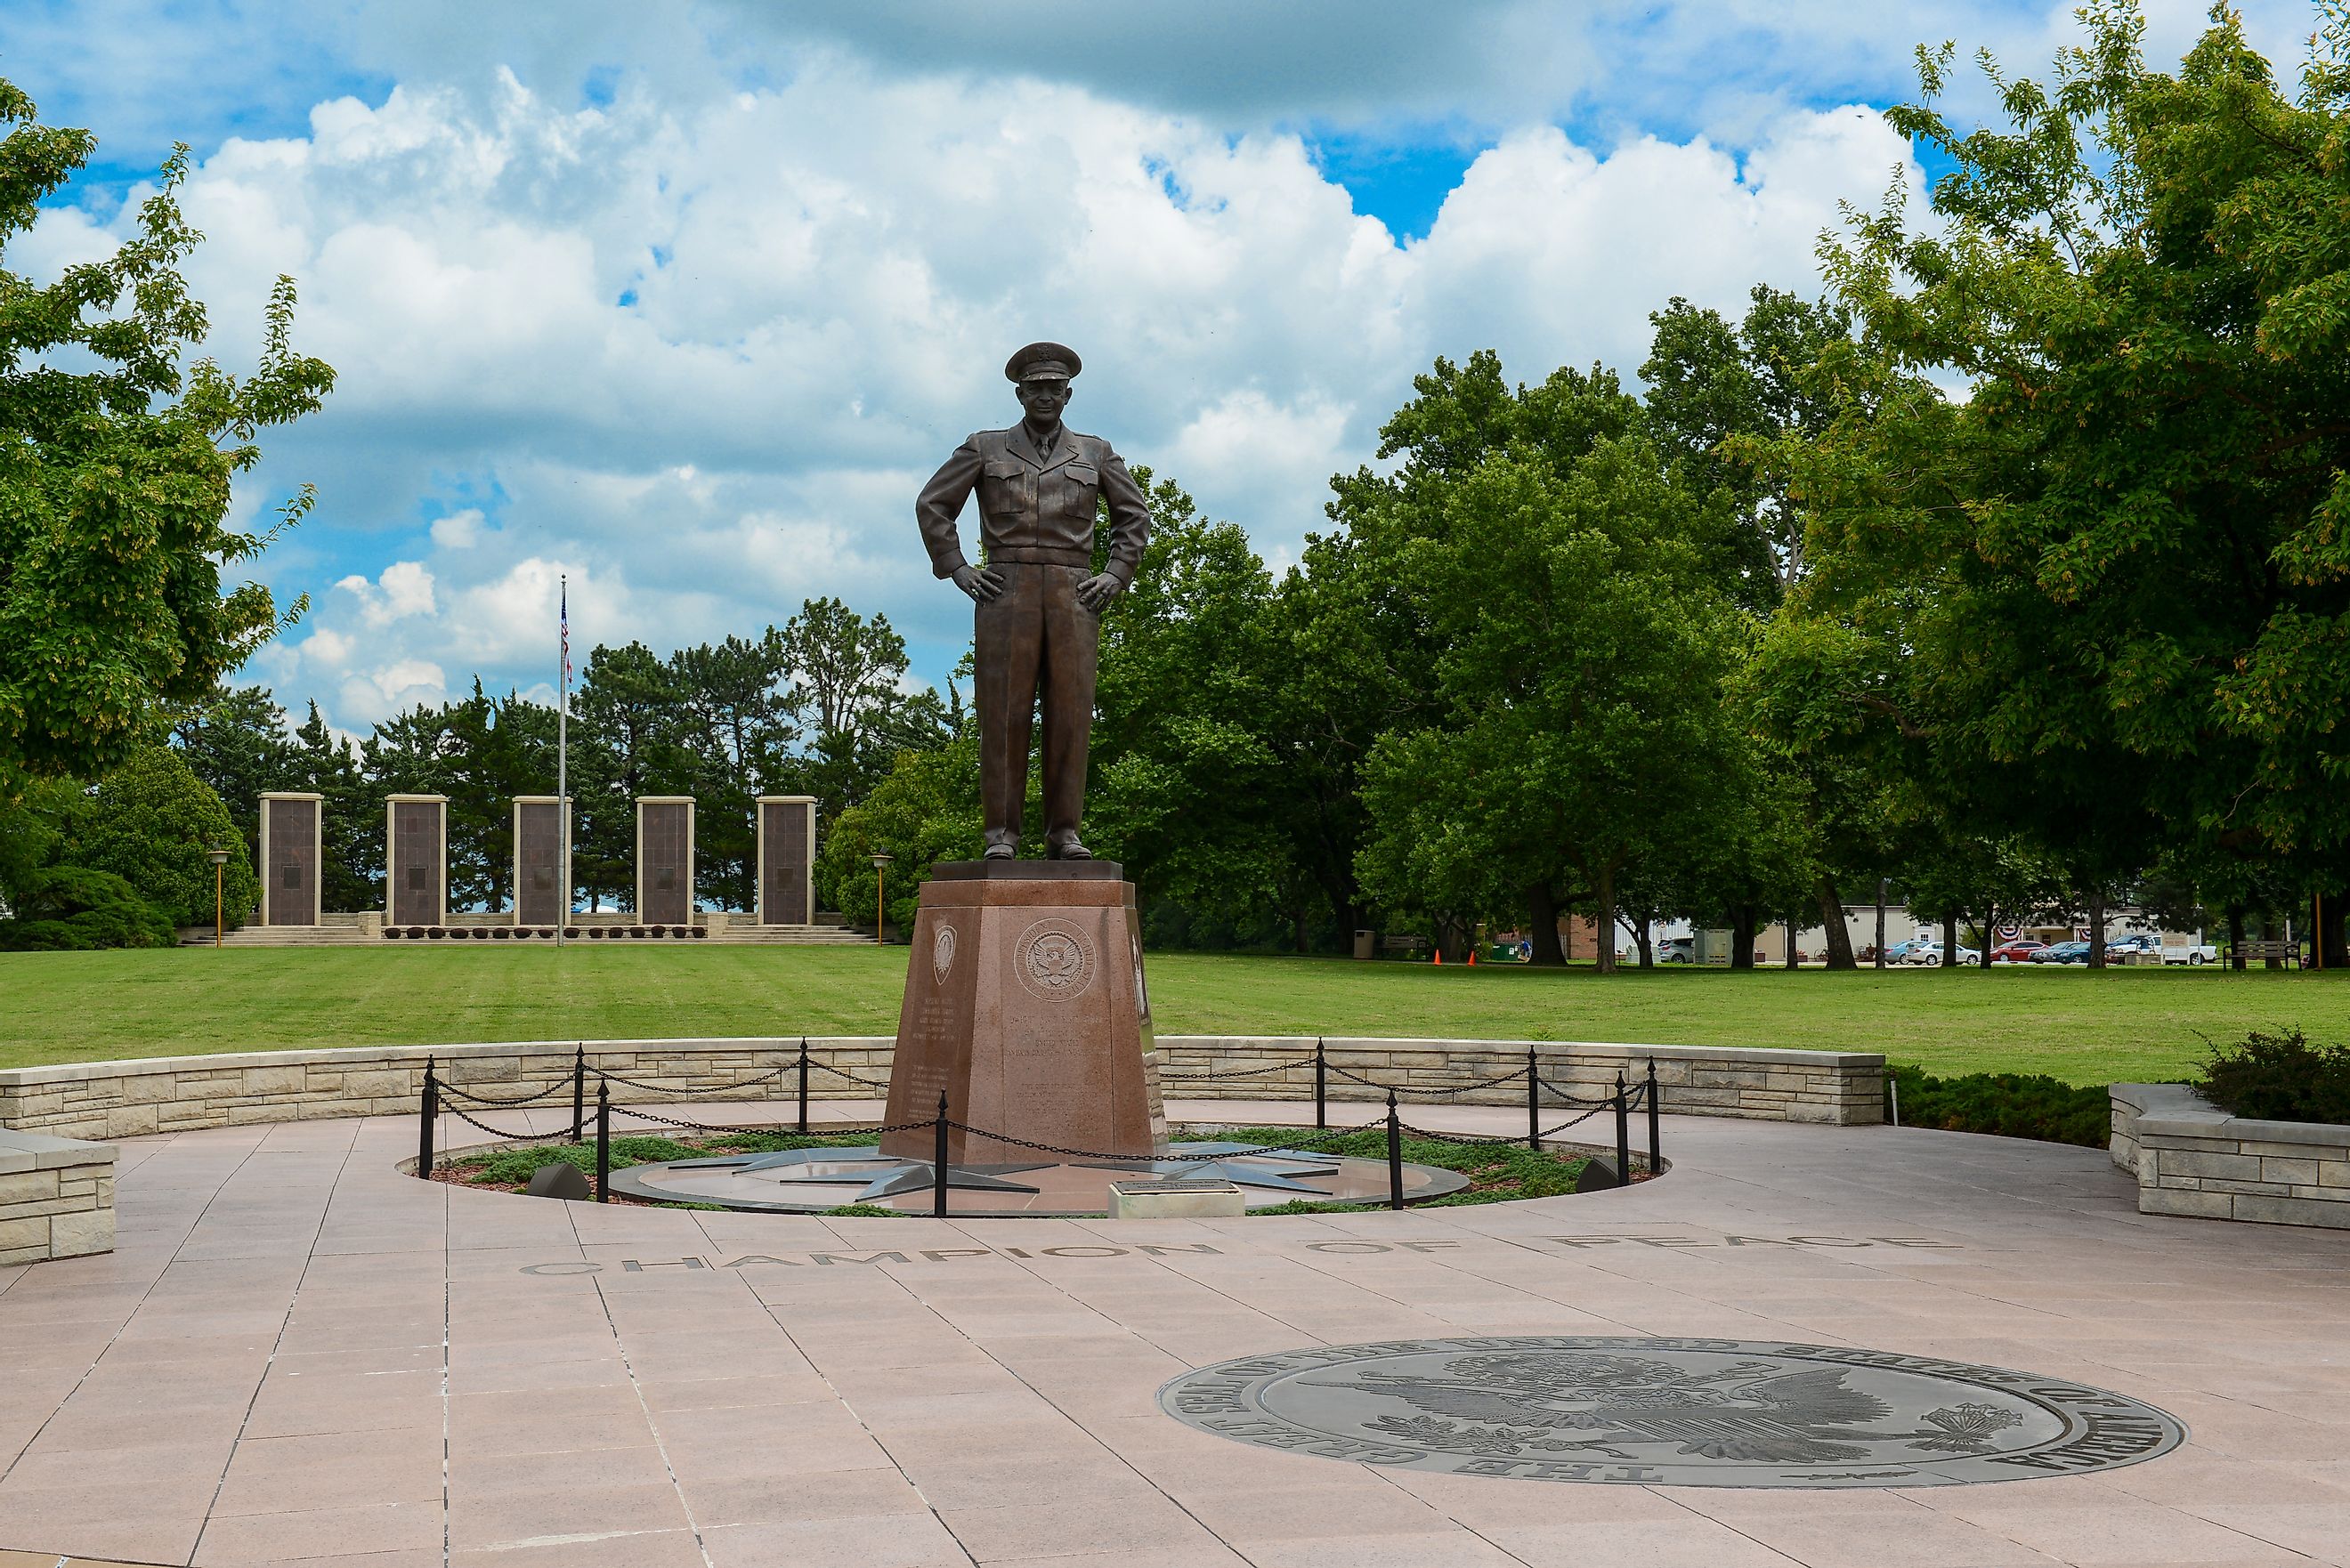 Monument of President Eisenhower in the park in Abilene.